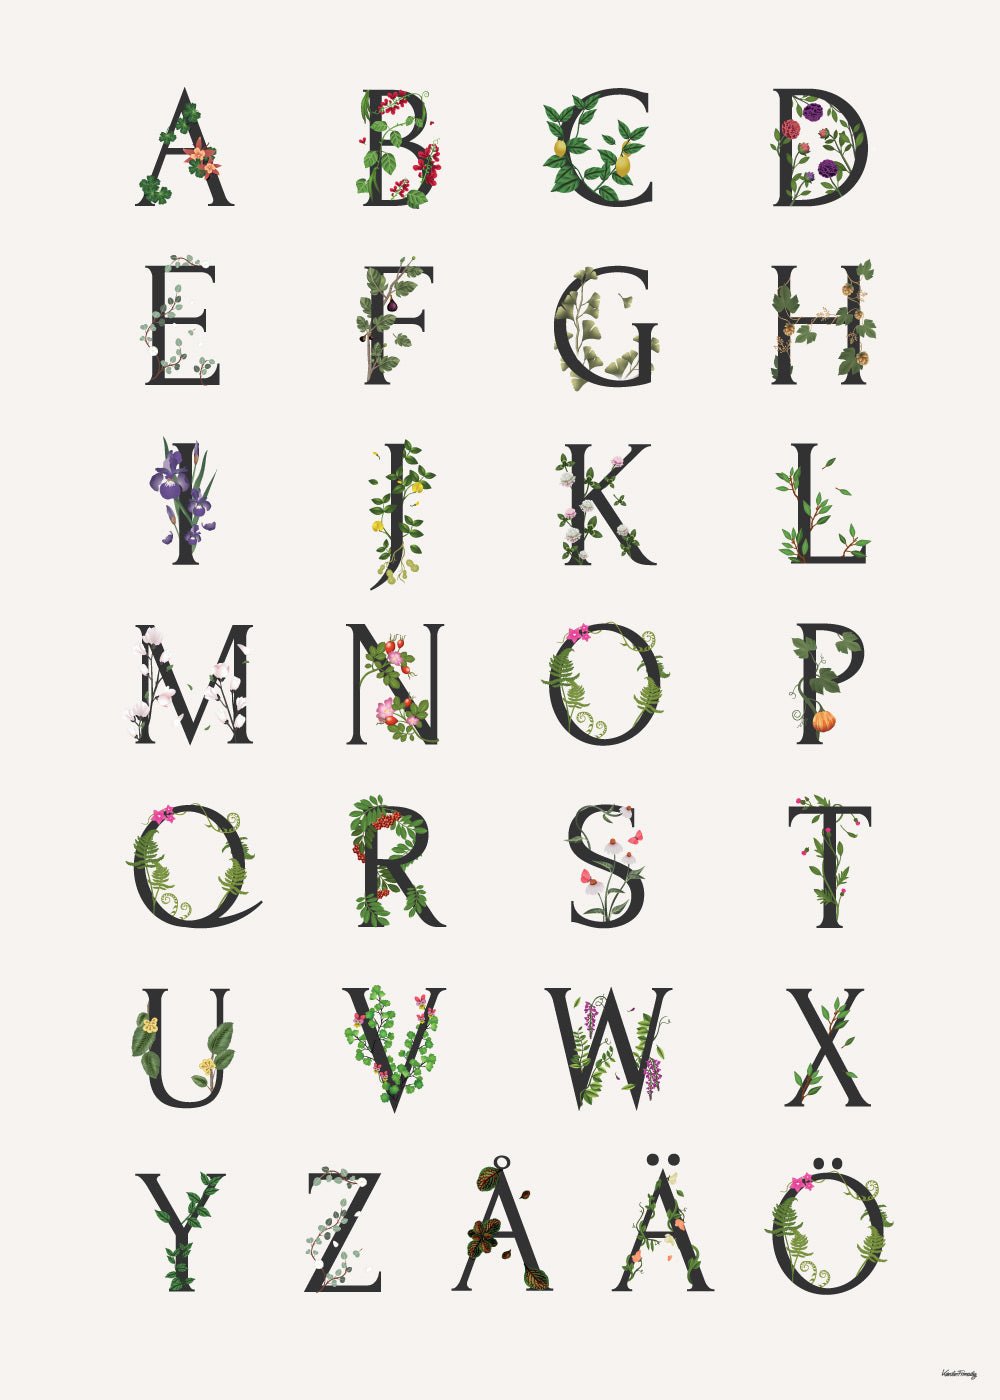 Barntavla med svenska alfabetet.